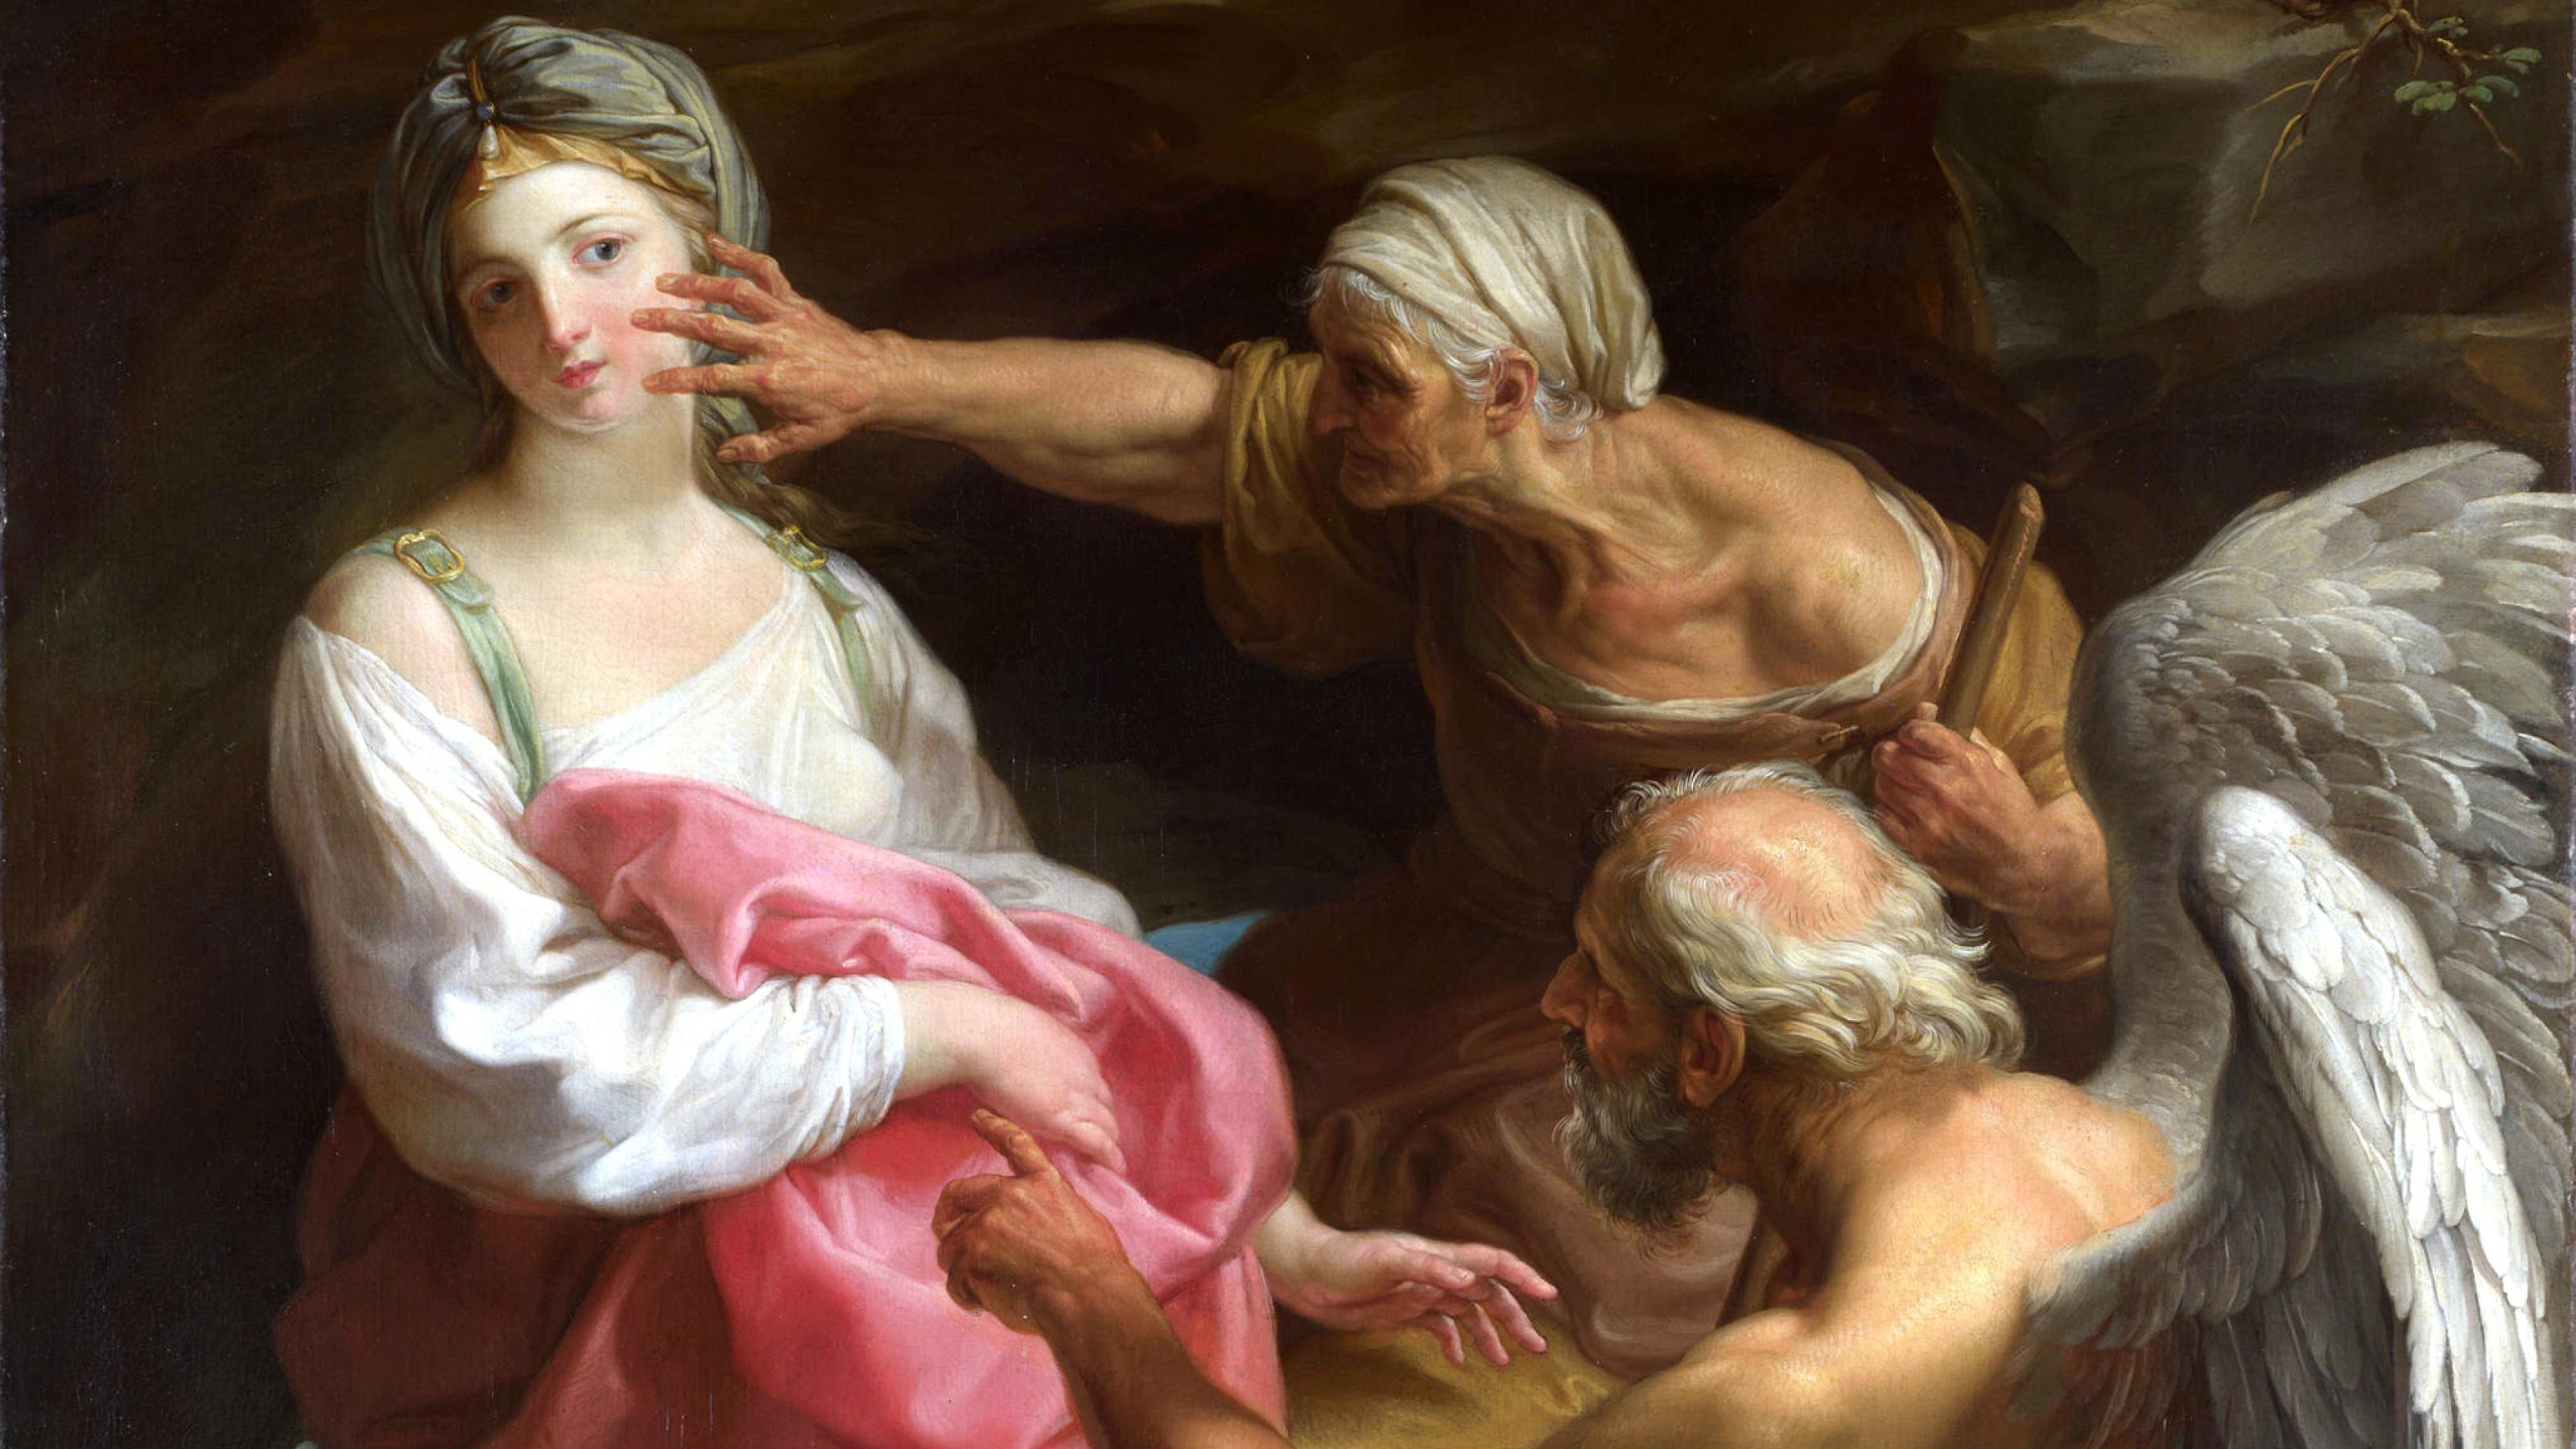 Links auf dem Gemälde ist eine junge Frau, zu sehen, die vor der Hand einer Alten rechts daneben zurückschreckt, die ihr Gesicht zu zerkratzen droht. Rechts unten im Bild ist ein grauhaariger Mann mit mächtigen Flügeln auf dem Rücken dargestellt, der mit seinem Zeigefinger auf die junge Frau weist.